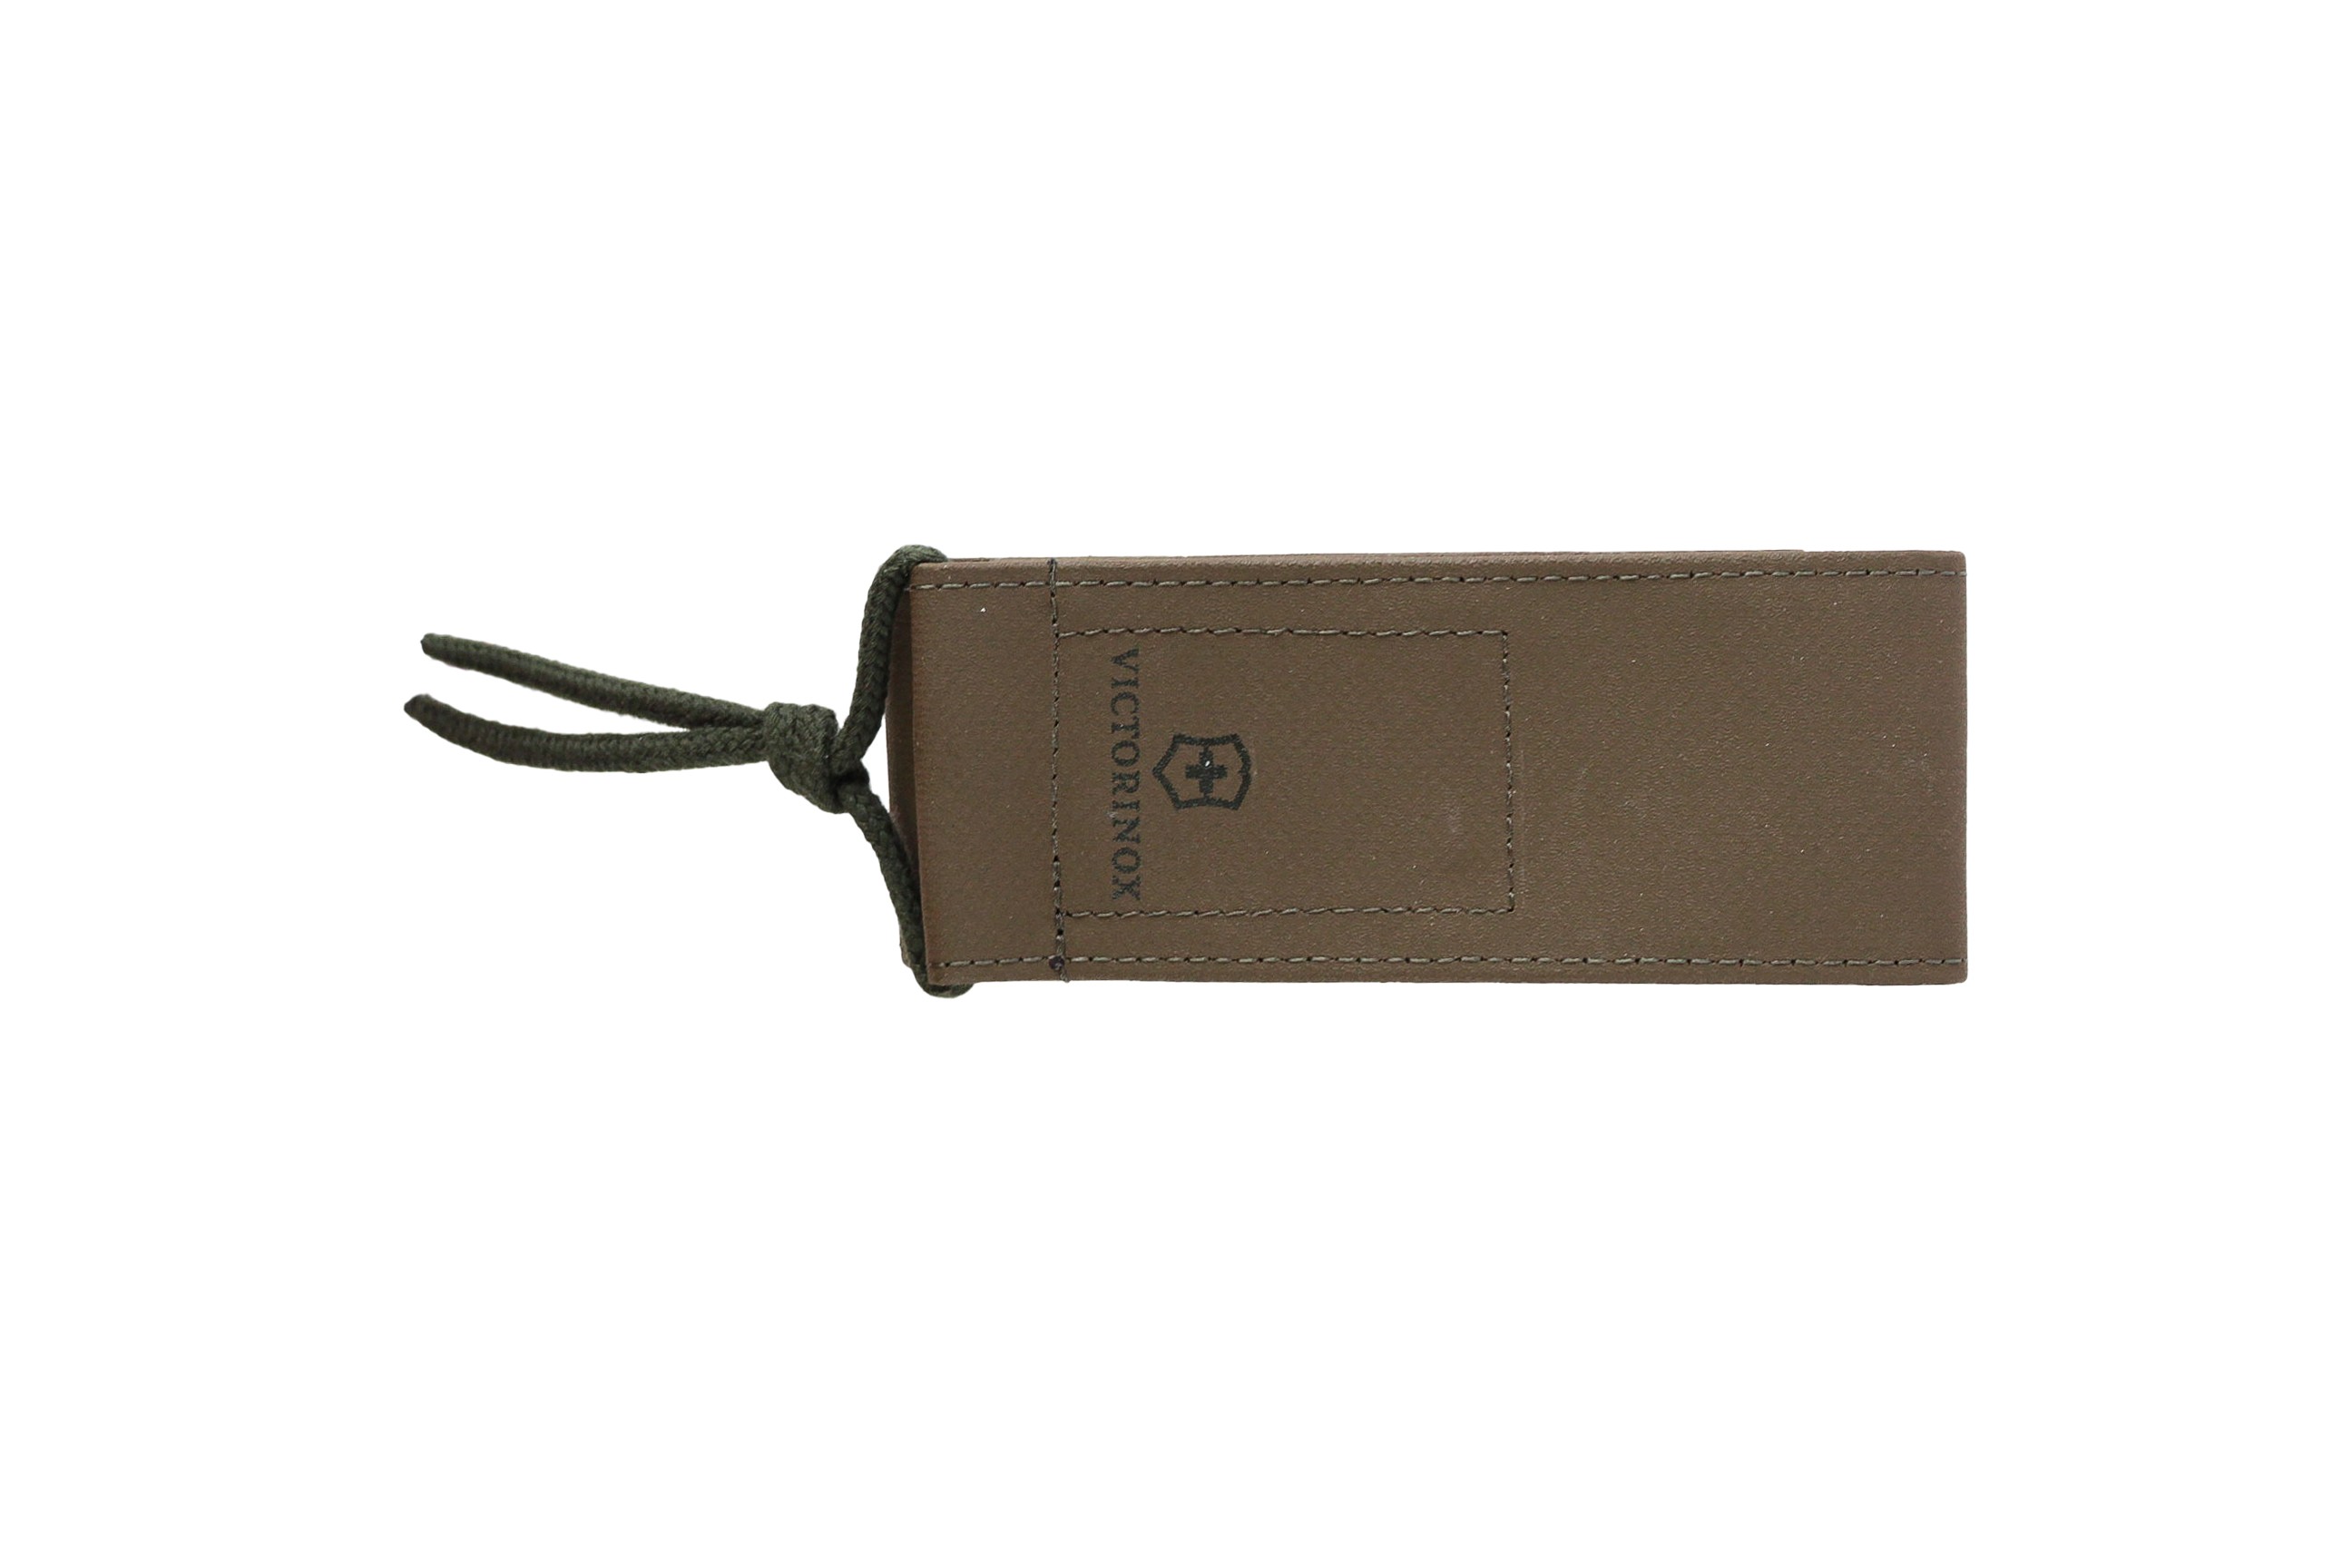 Чехол Victorinox Leather belt pouch иск. кожа зеленый с застежкой - фото 1